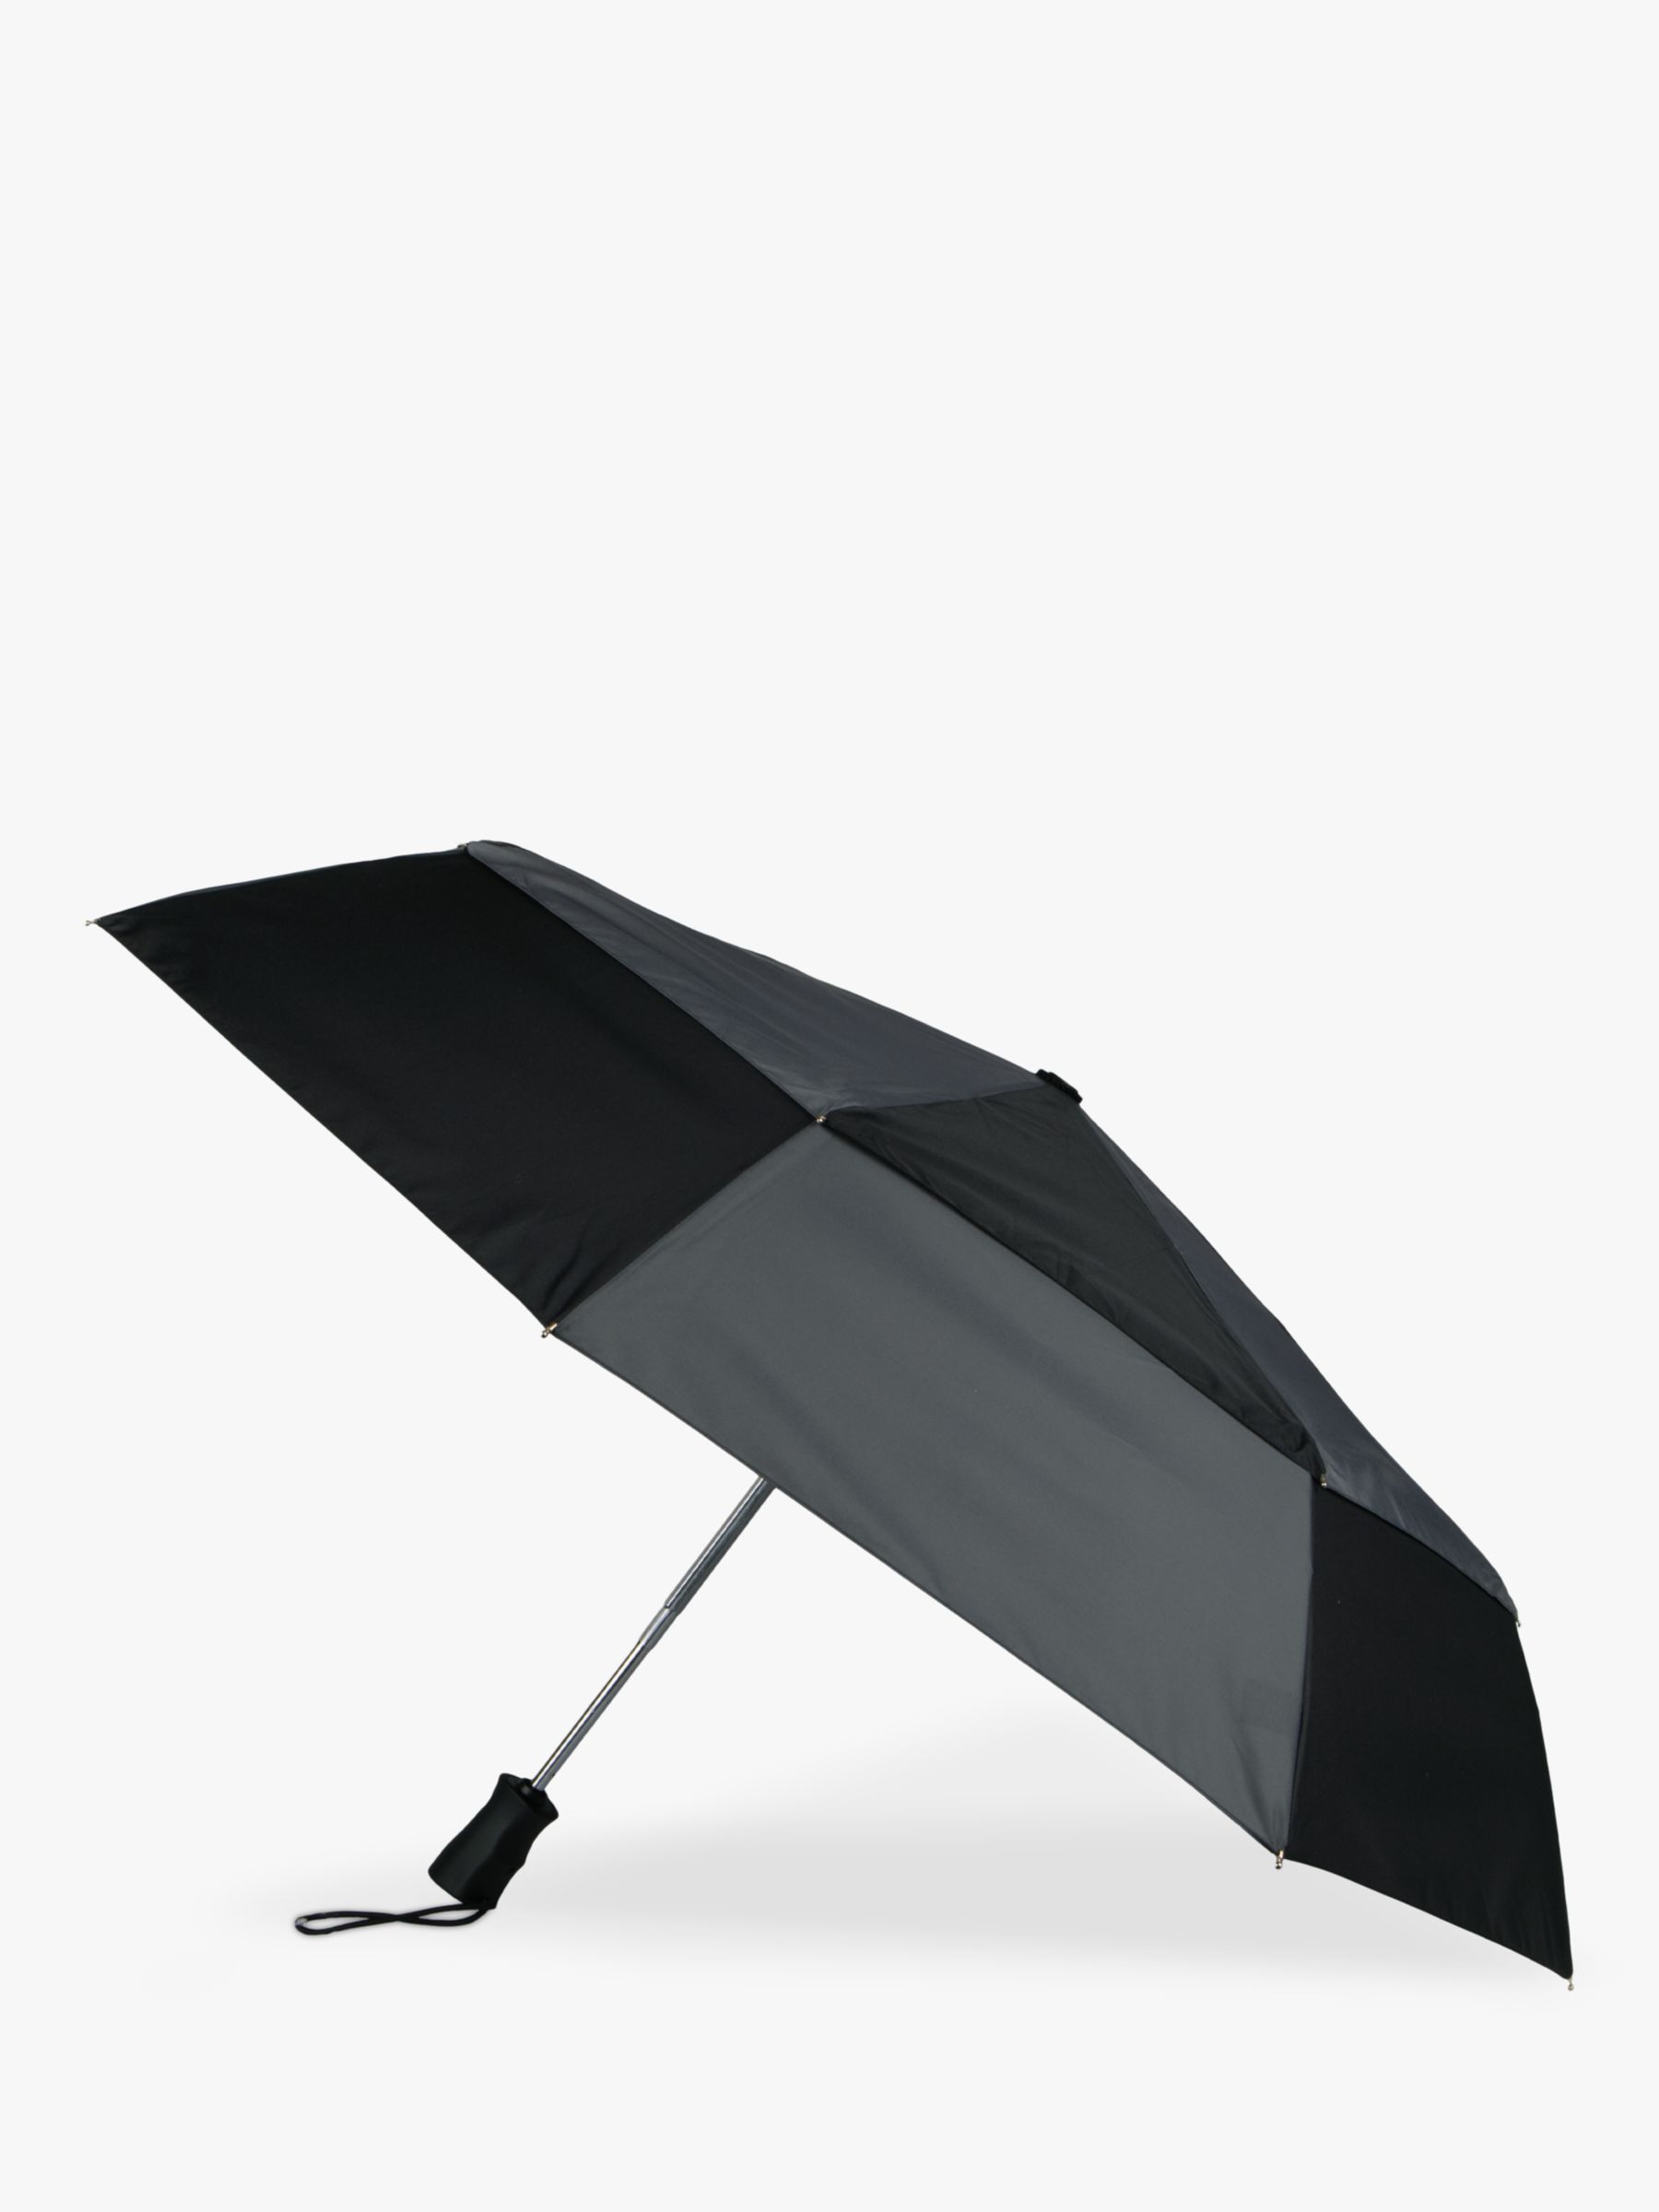 totes Eco Auto Open & Close Umbrella, Black/Charcoal